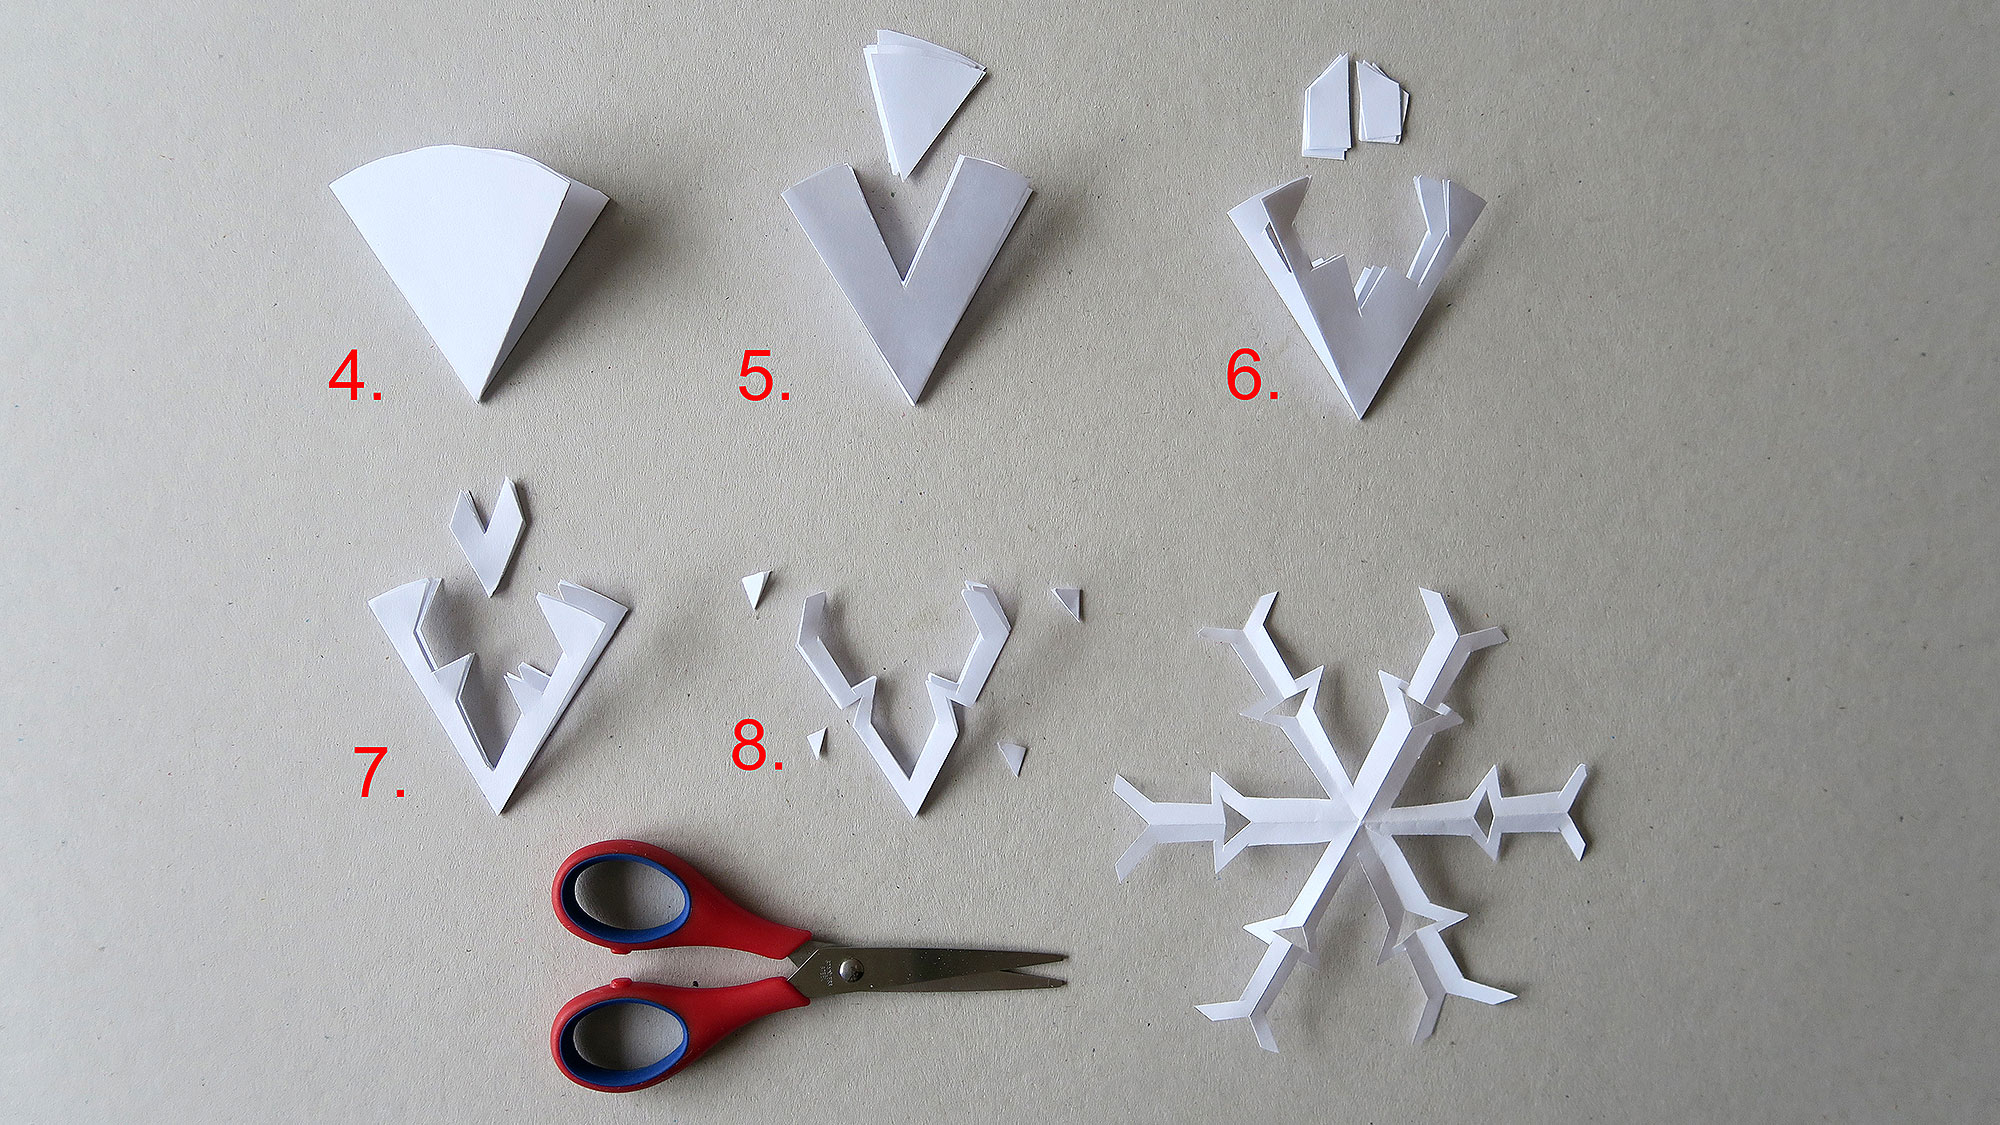 Scherenschnitt In 3D - Eine Einfache Schneeflocke | Famigros innen Scherenschnitt Schneeflocke Anleitung